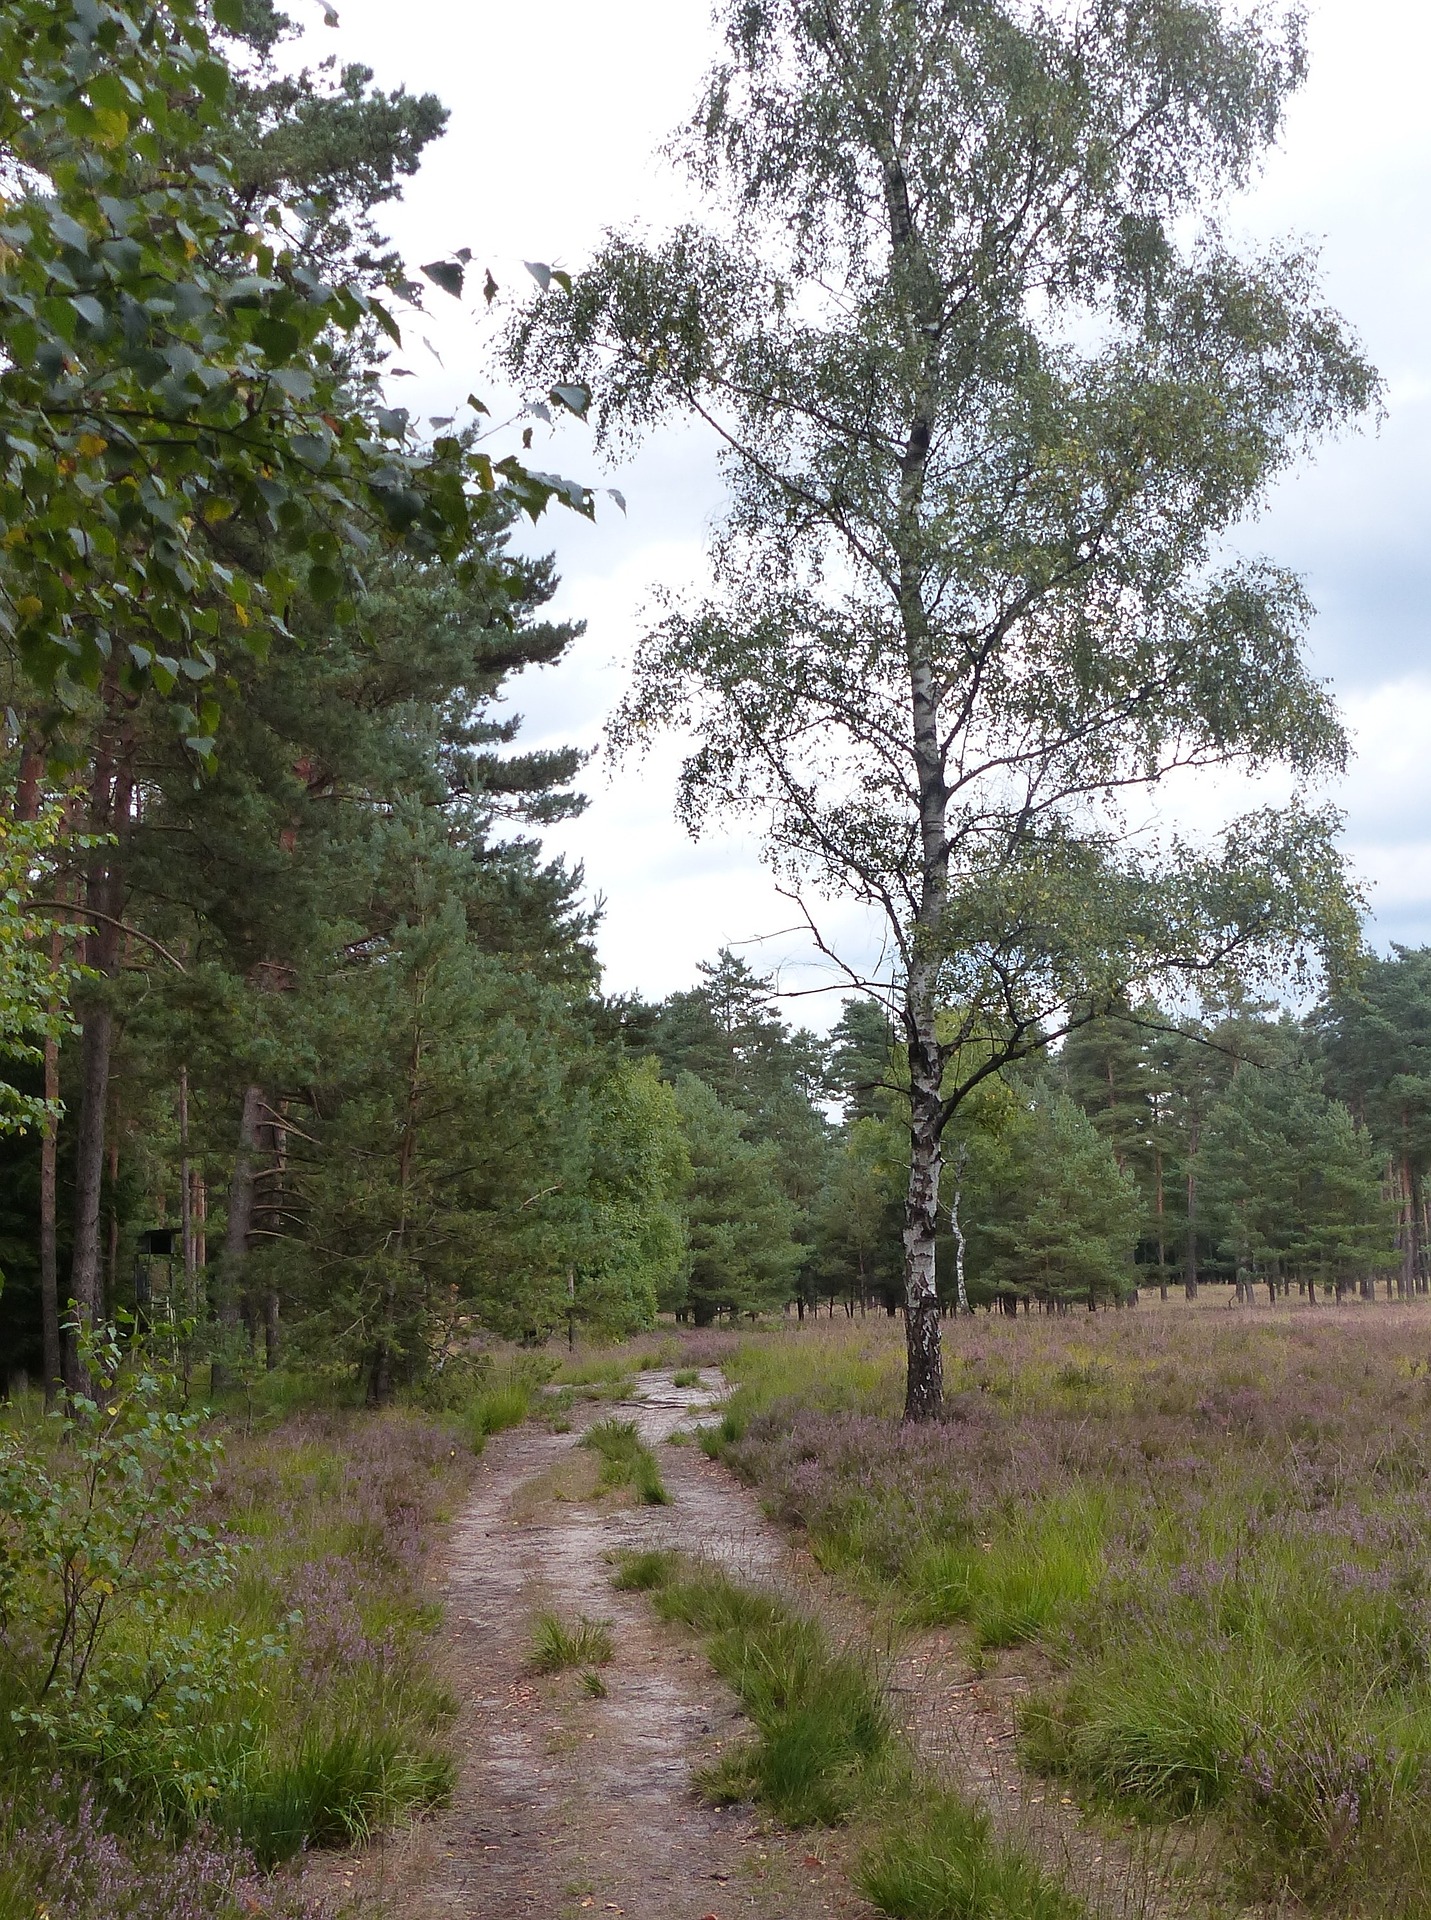 Die Senne ist eine wildreiche Gegend in Ostwestfalen. (Foto: Reinhold Werner / pixabay.com)